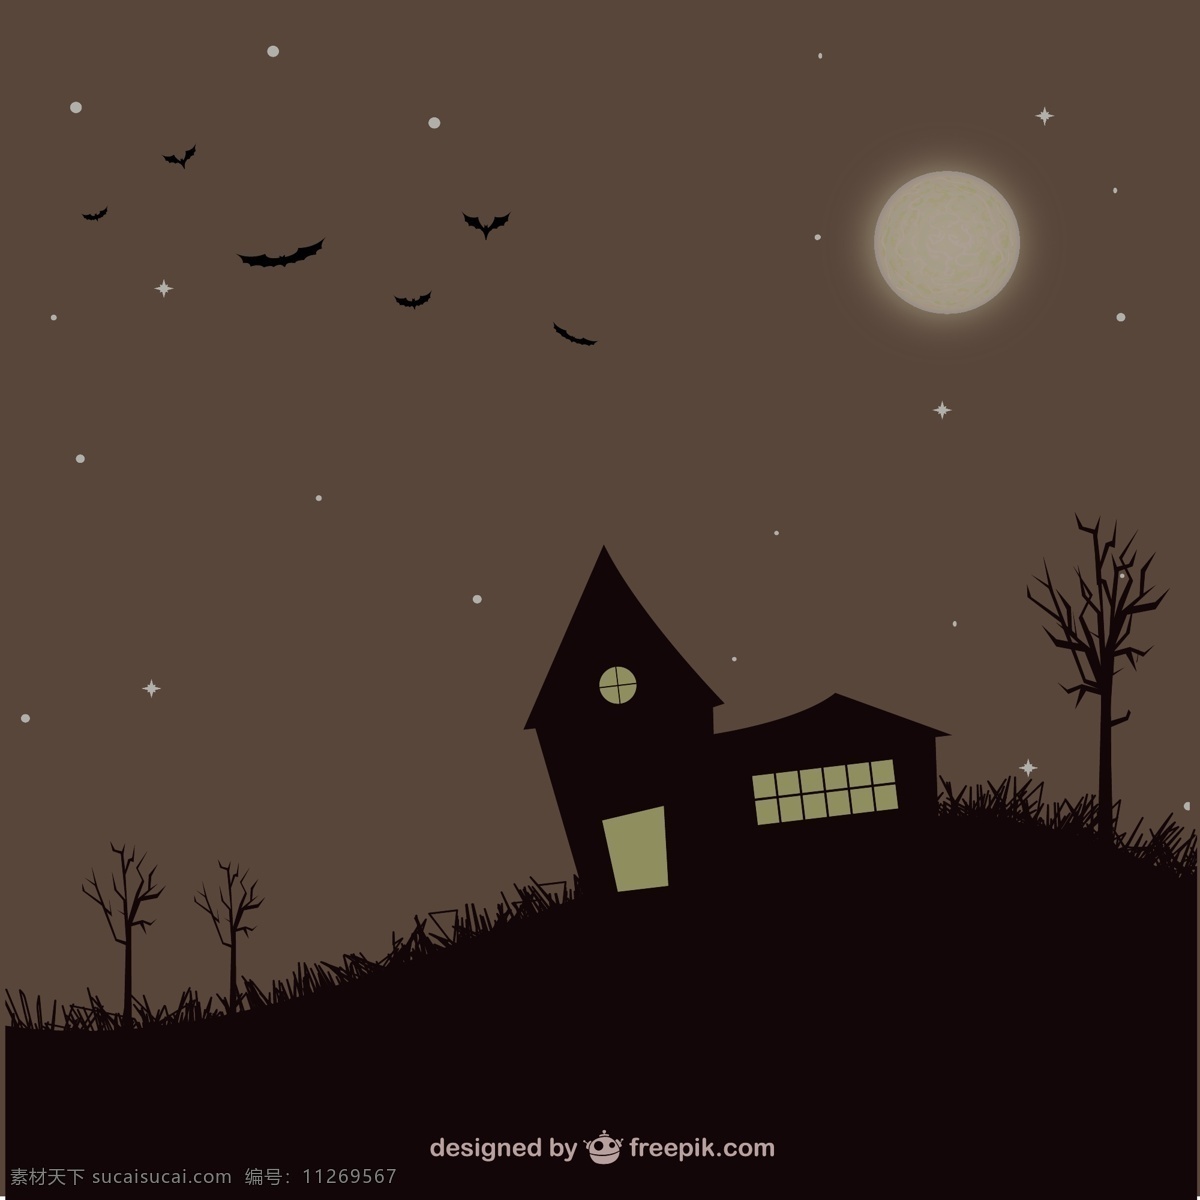 万圣节 幽灵 般 背景 月亮的夜晚 万圣节的背景 主题 万圣节蝙蝠 矢量 可怕 蝙蝠 夜 载体 黑色